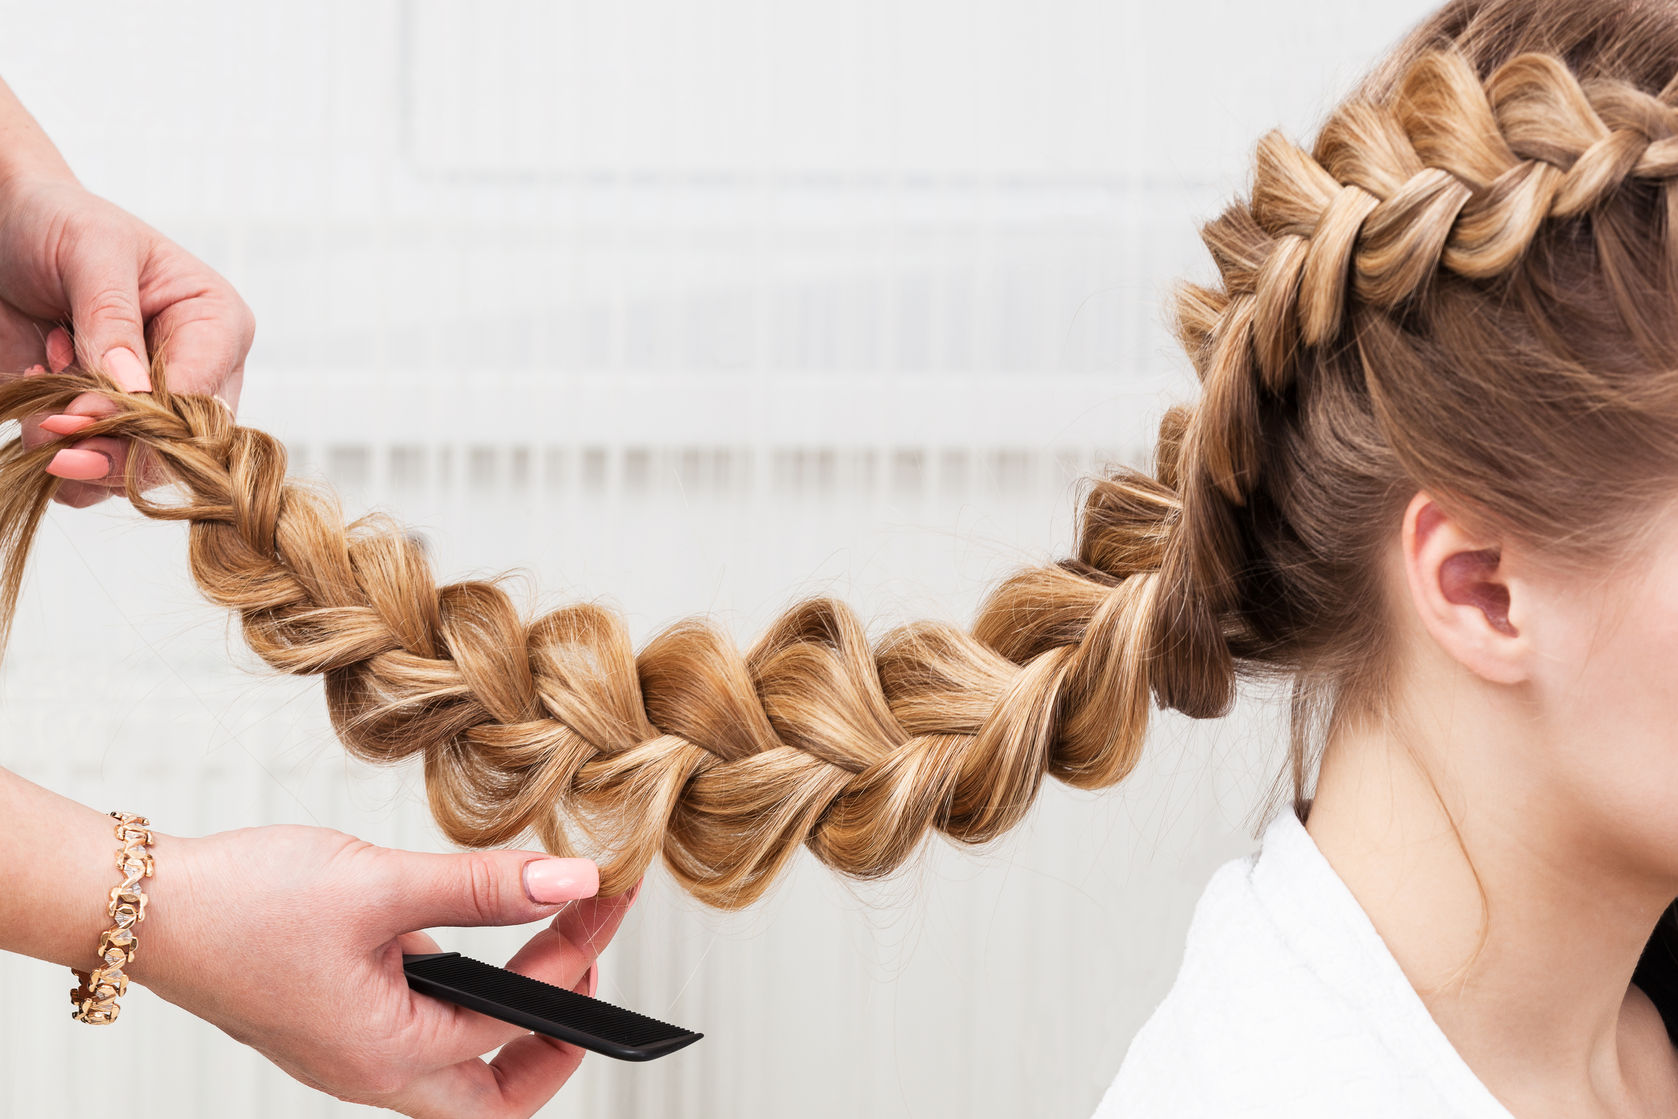 32620610 - weave braid girl in a hair salon